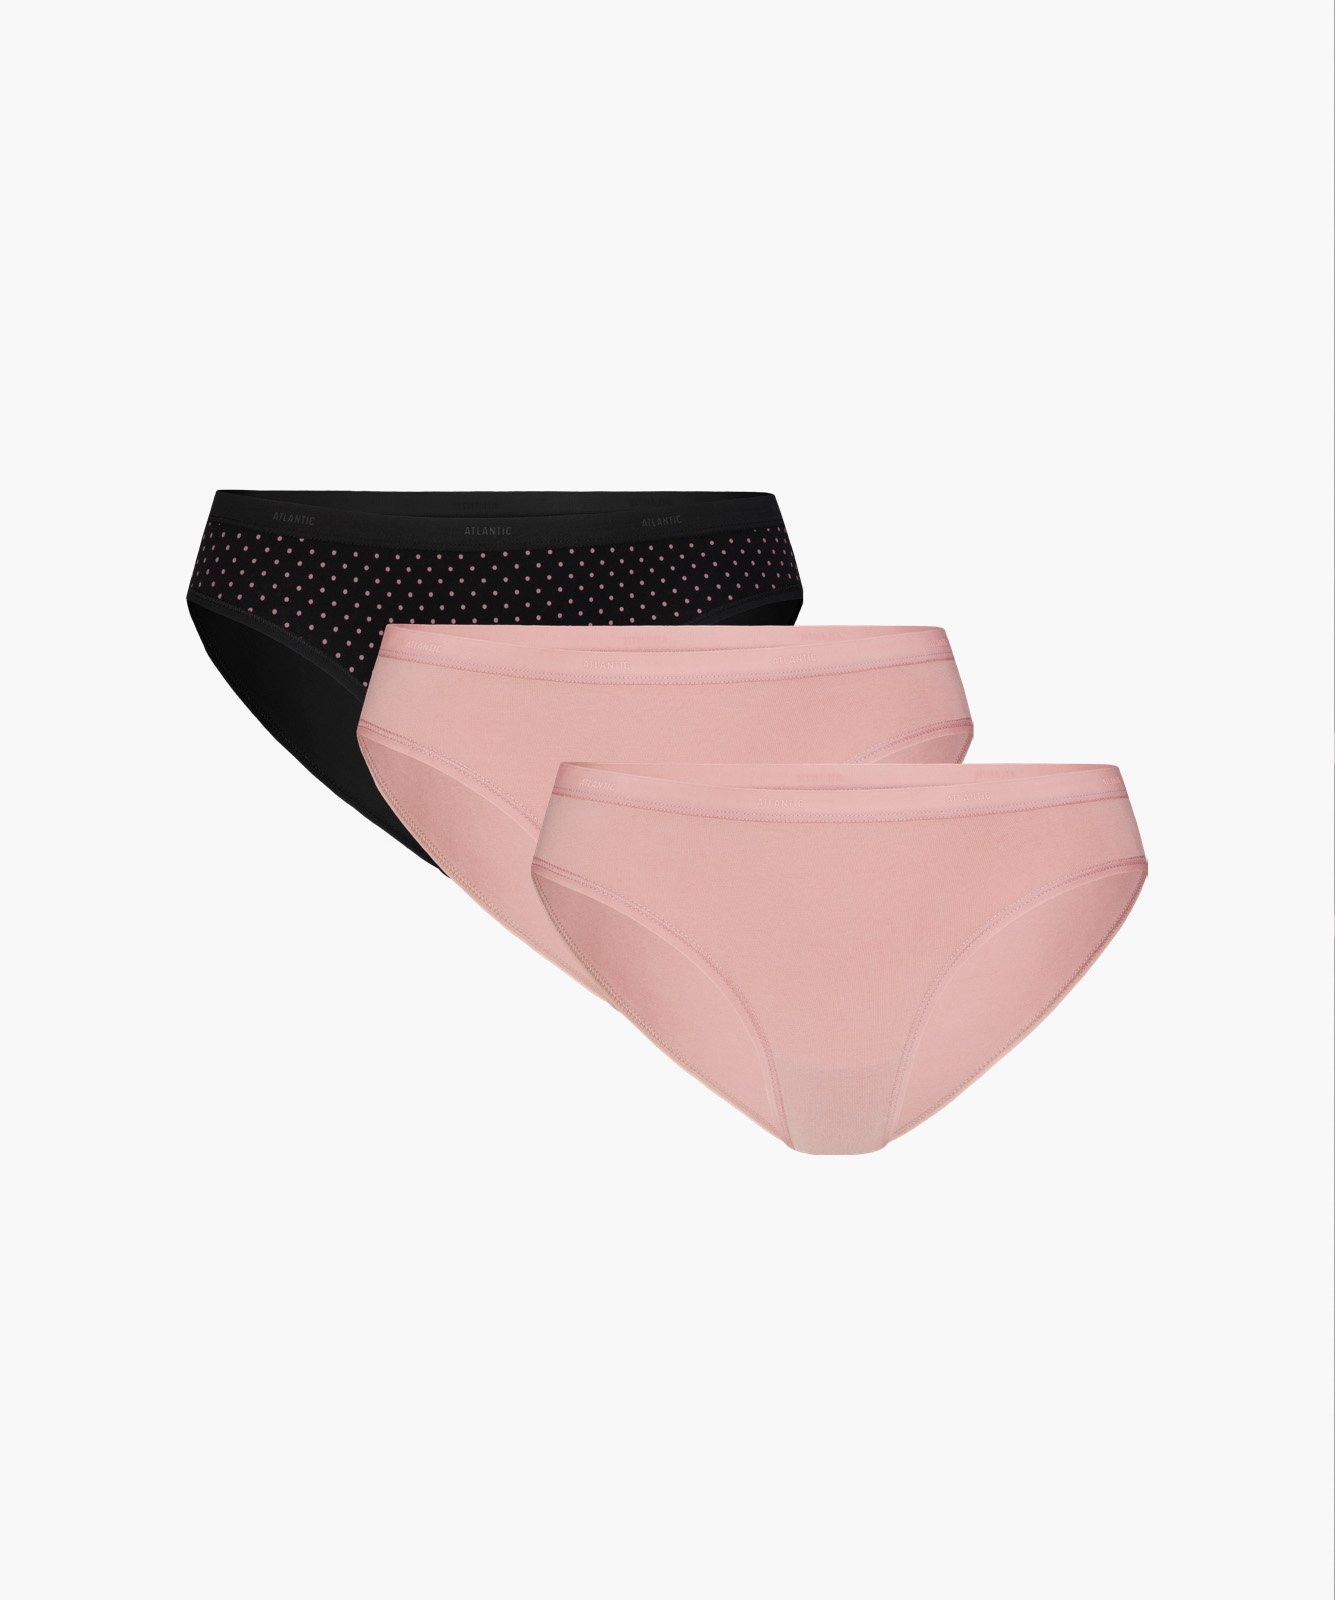 Levně Dámské kalhotky ATLANTIC 3Pack - černé/růžové